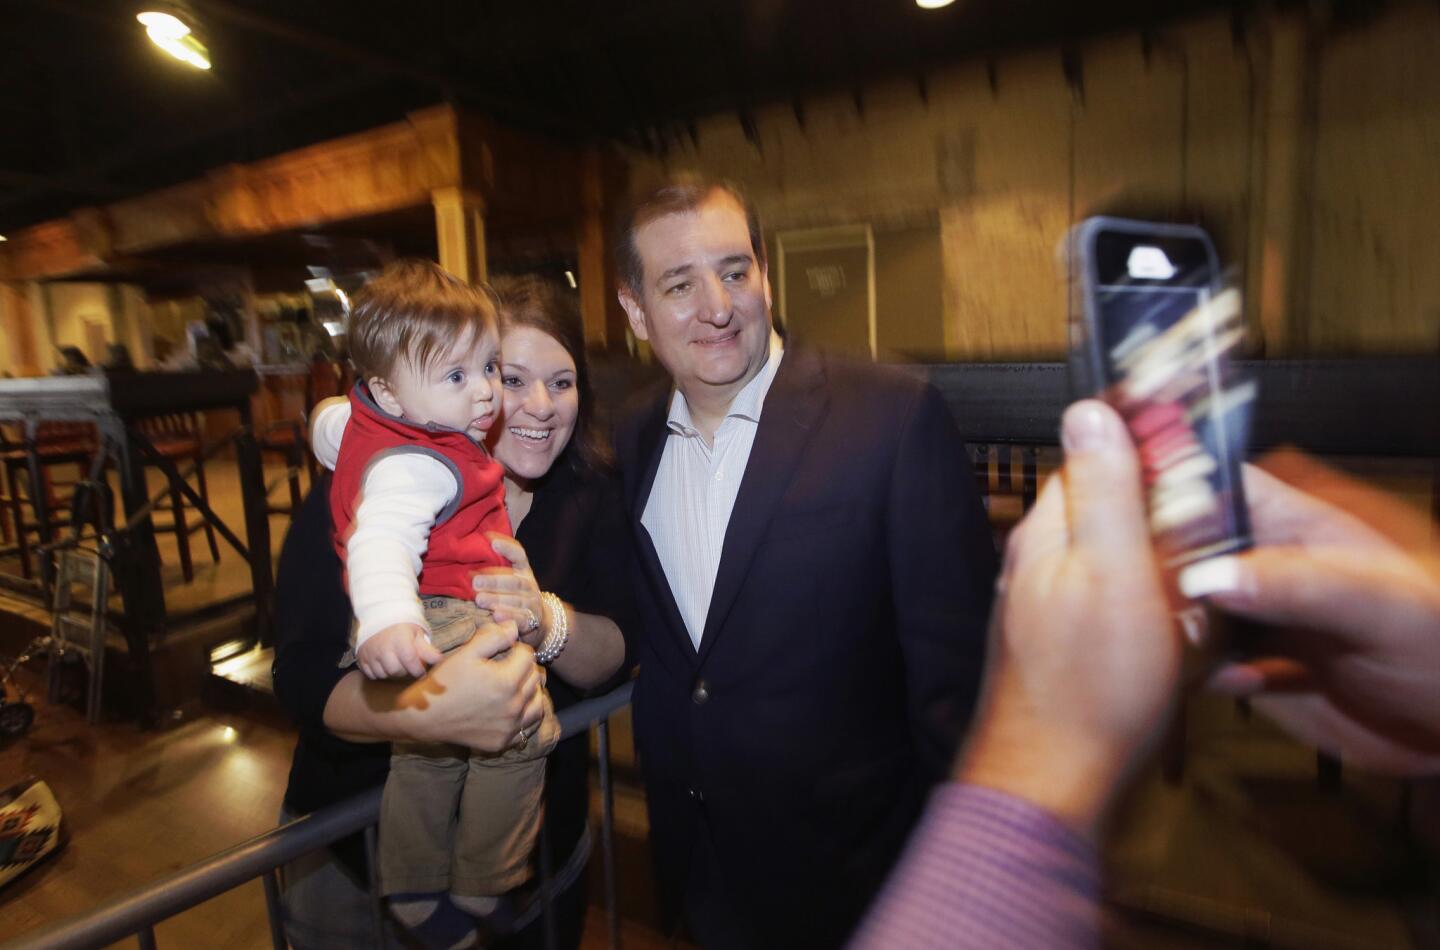 Sen. Ted Cruz campaigns in Dallas